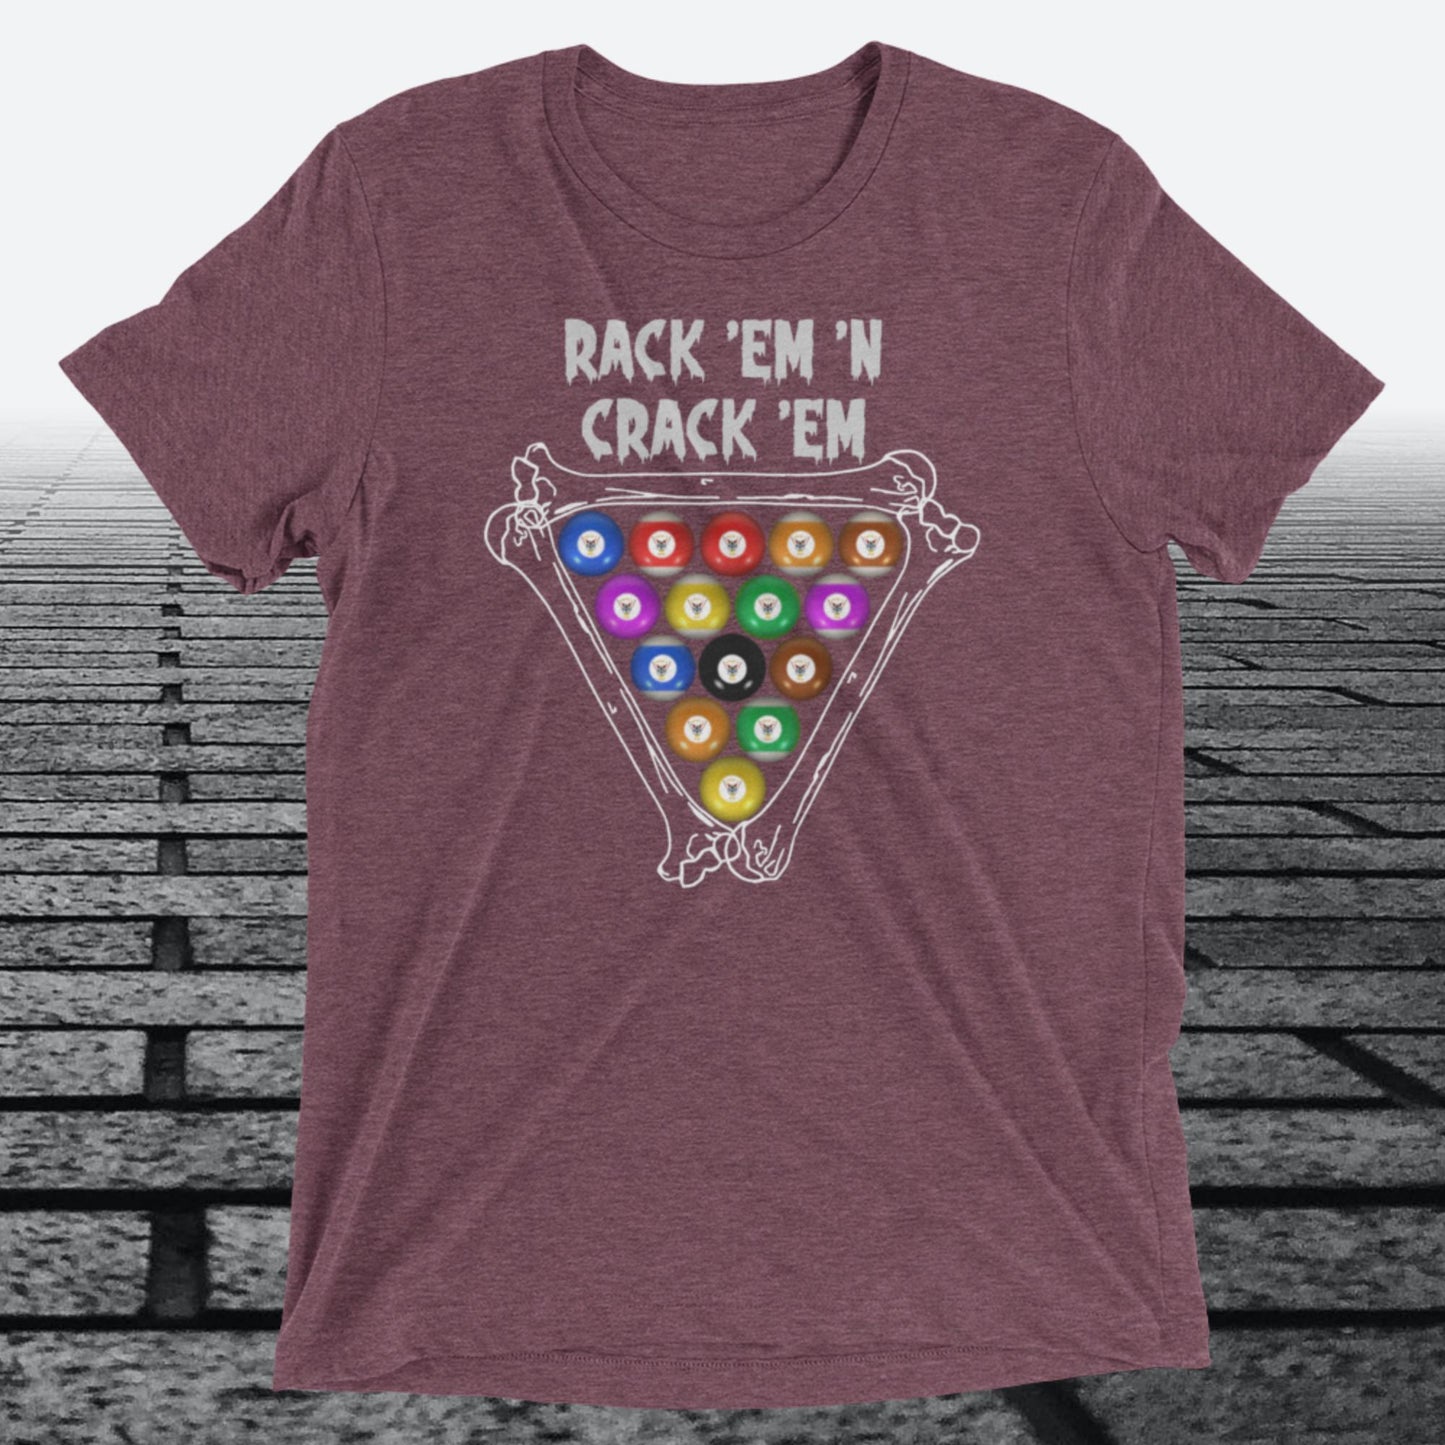 Rack 'Em 'N Crack 'Em, on front of the shirt, Tri-blend T-shirt